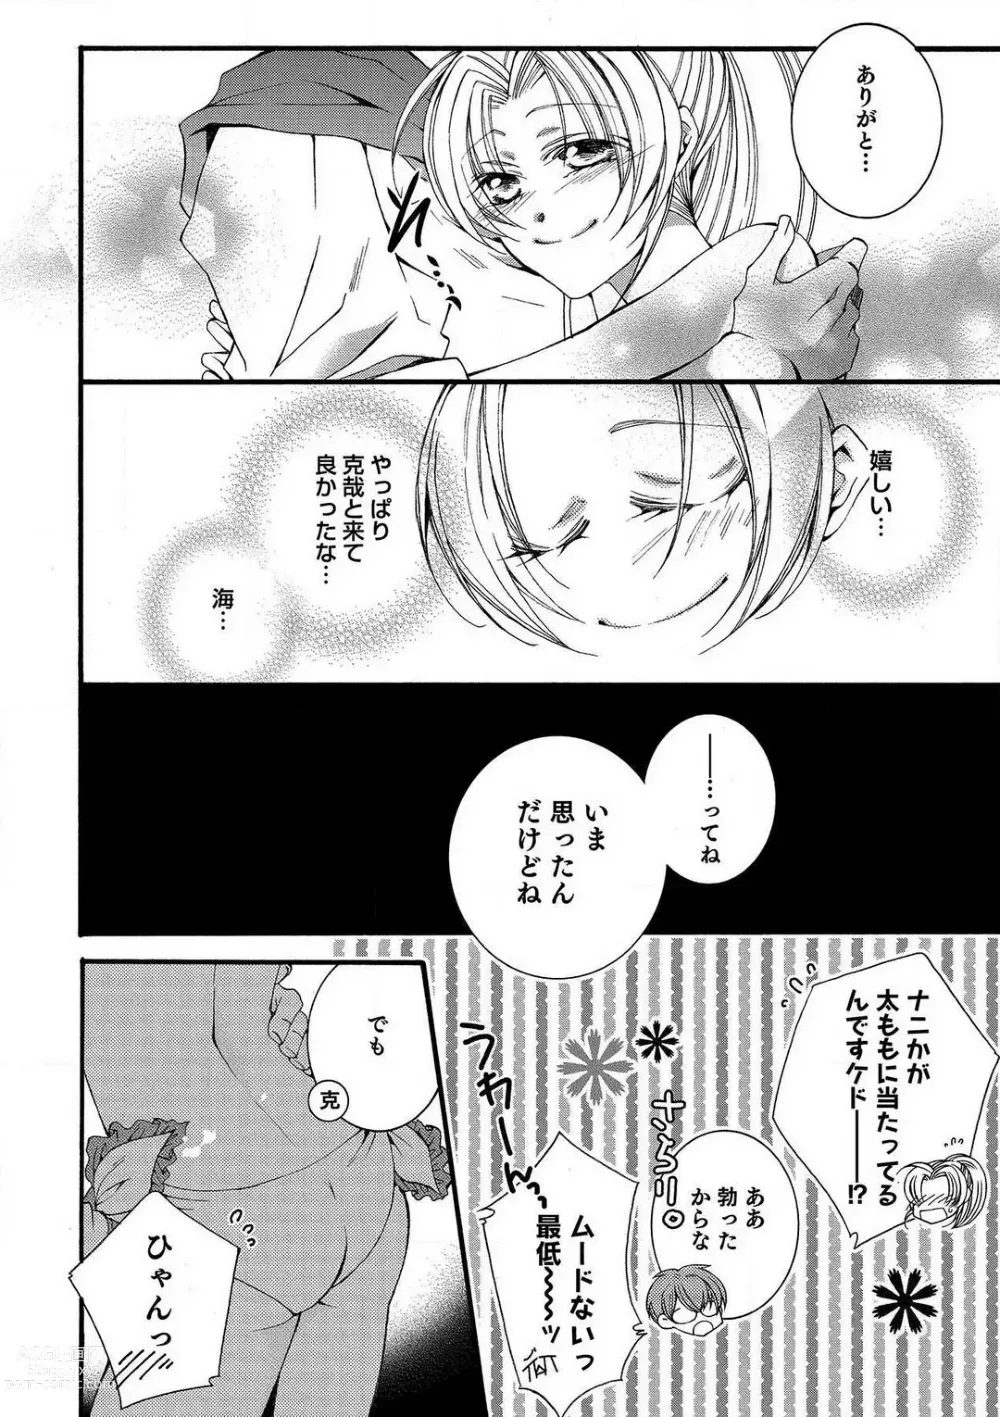 Page 66 of manga LOVE×PLAY 1-4